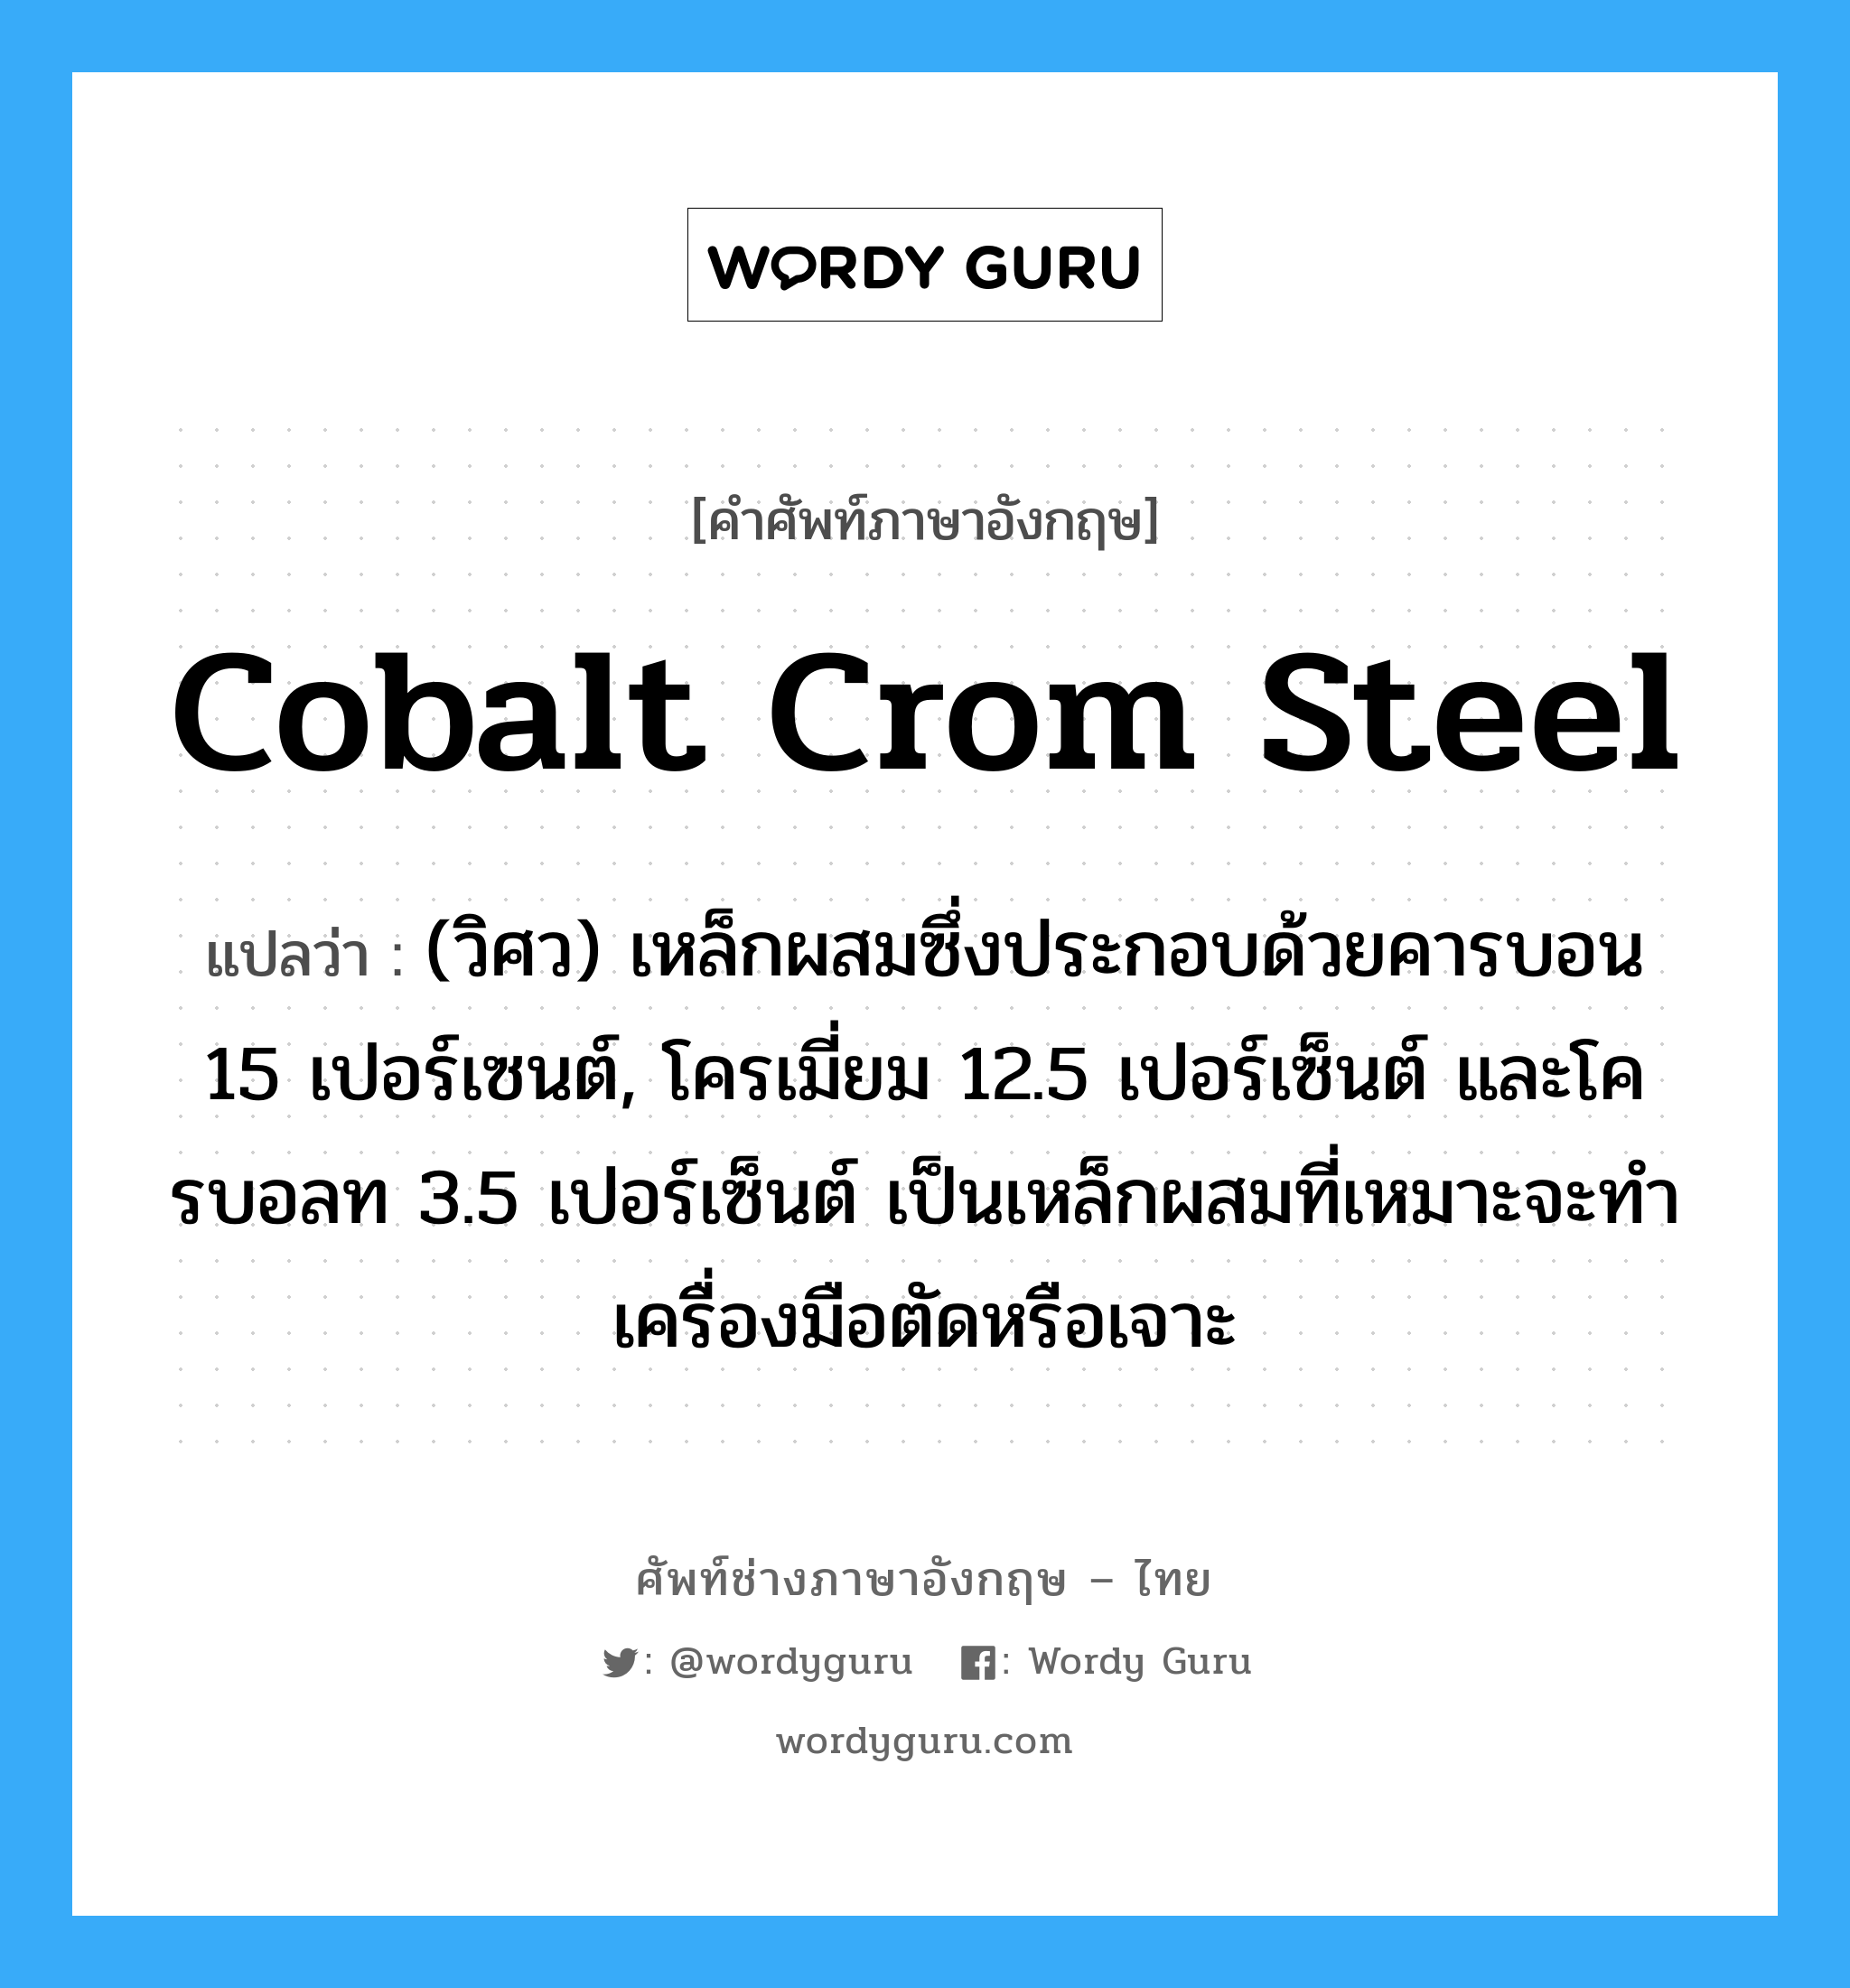 cobalt crom steel แปลว่า?, คำศัพท์ช่างภาษาอังกฤษ - ไทย cobalt crom steel คำศัพท์ภาษาอังกฤษ cobalt crom steel แปลว่า (วิศว) เหล็กผสมซึ่งประกอบด้วยคารบอน 15 เปอร์เซนต์, โครเมี่ยม 12.5 เปอร์เซ็นต์ และโครบอลท 3.5 เปอร์เซ็นต์ เป็นเหล็กผสมที่เหมาะจะทำเครื่องมือตัดหรือเจาะ